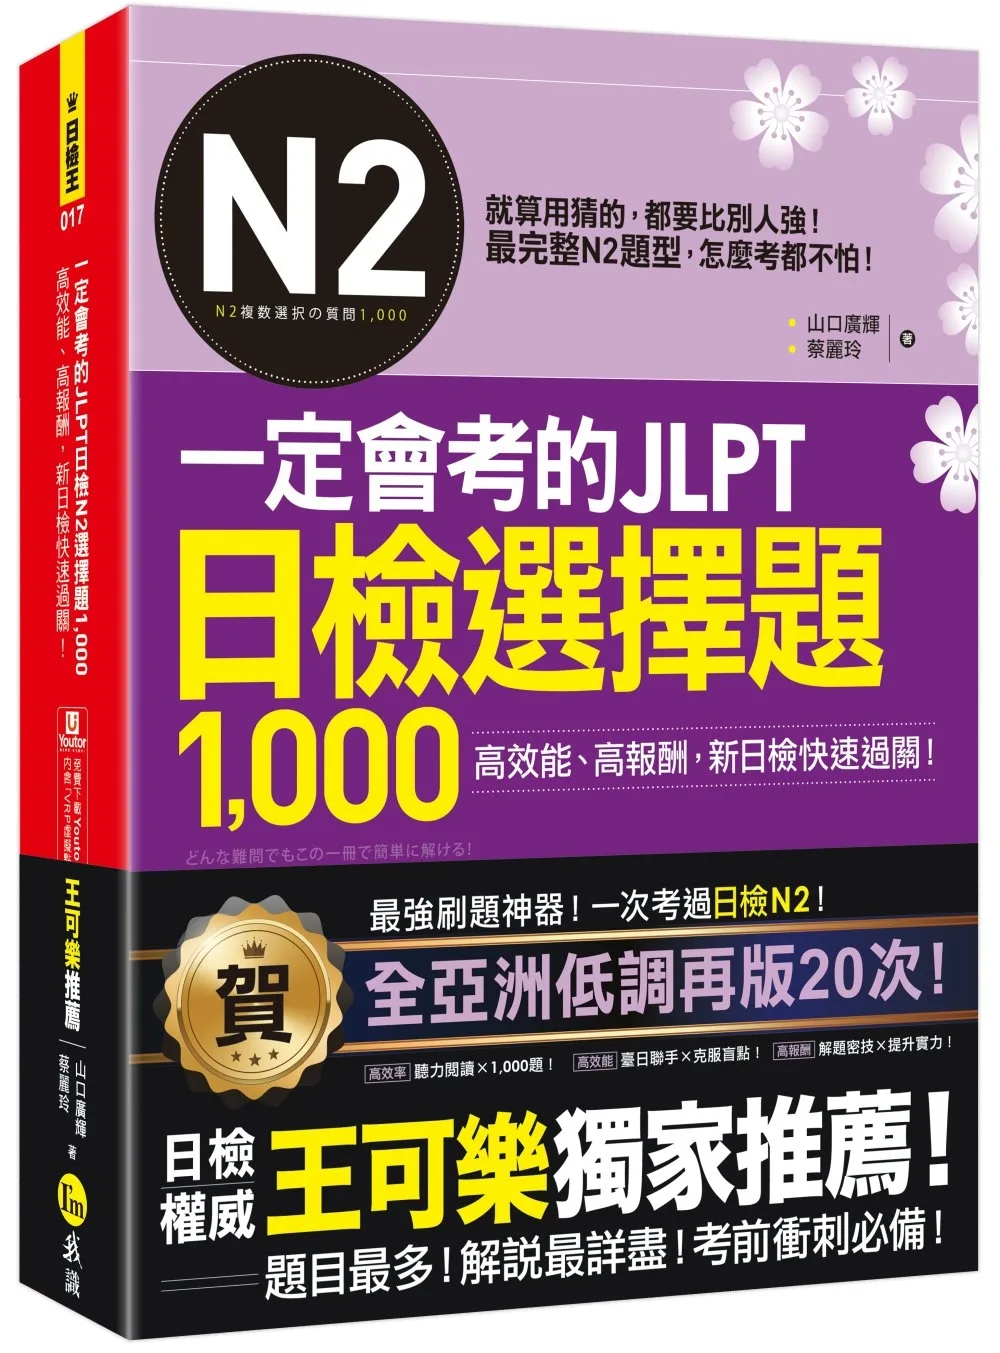 一定會考的JLPT日檢N2選擇題1,000：高效能、高報酬、新日檢快速過關！（免費附贈「Youtor